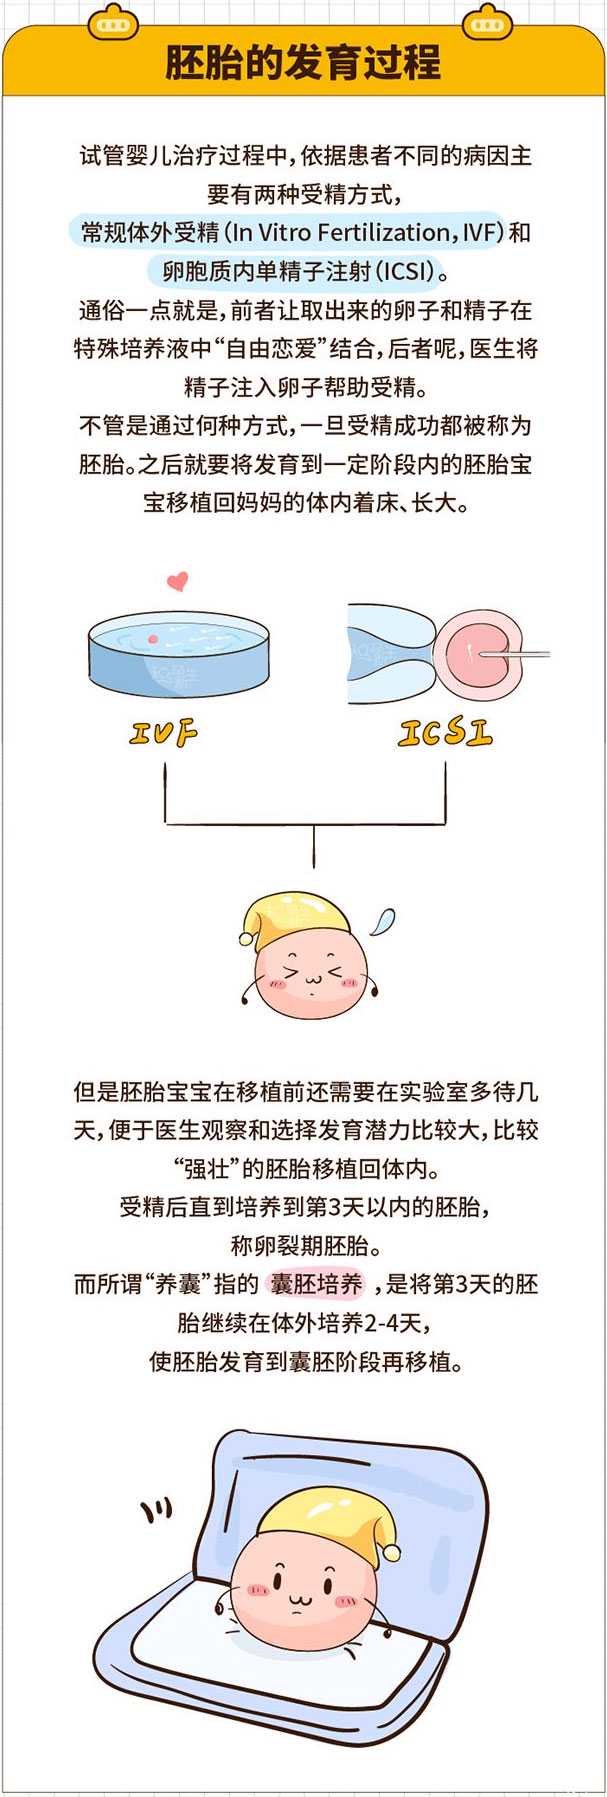 灌阳县圆梦助孕中心在哪里_灌阳县助孕哪家_试管婴儿胚胎发育过程是怎样的